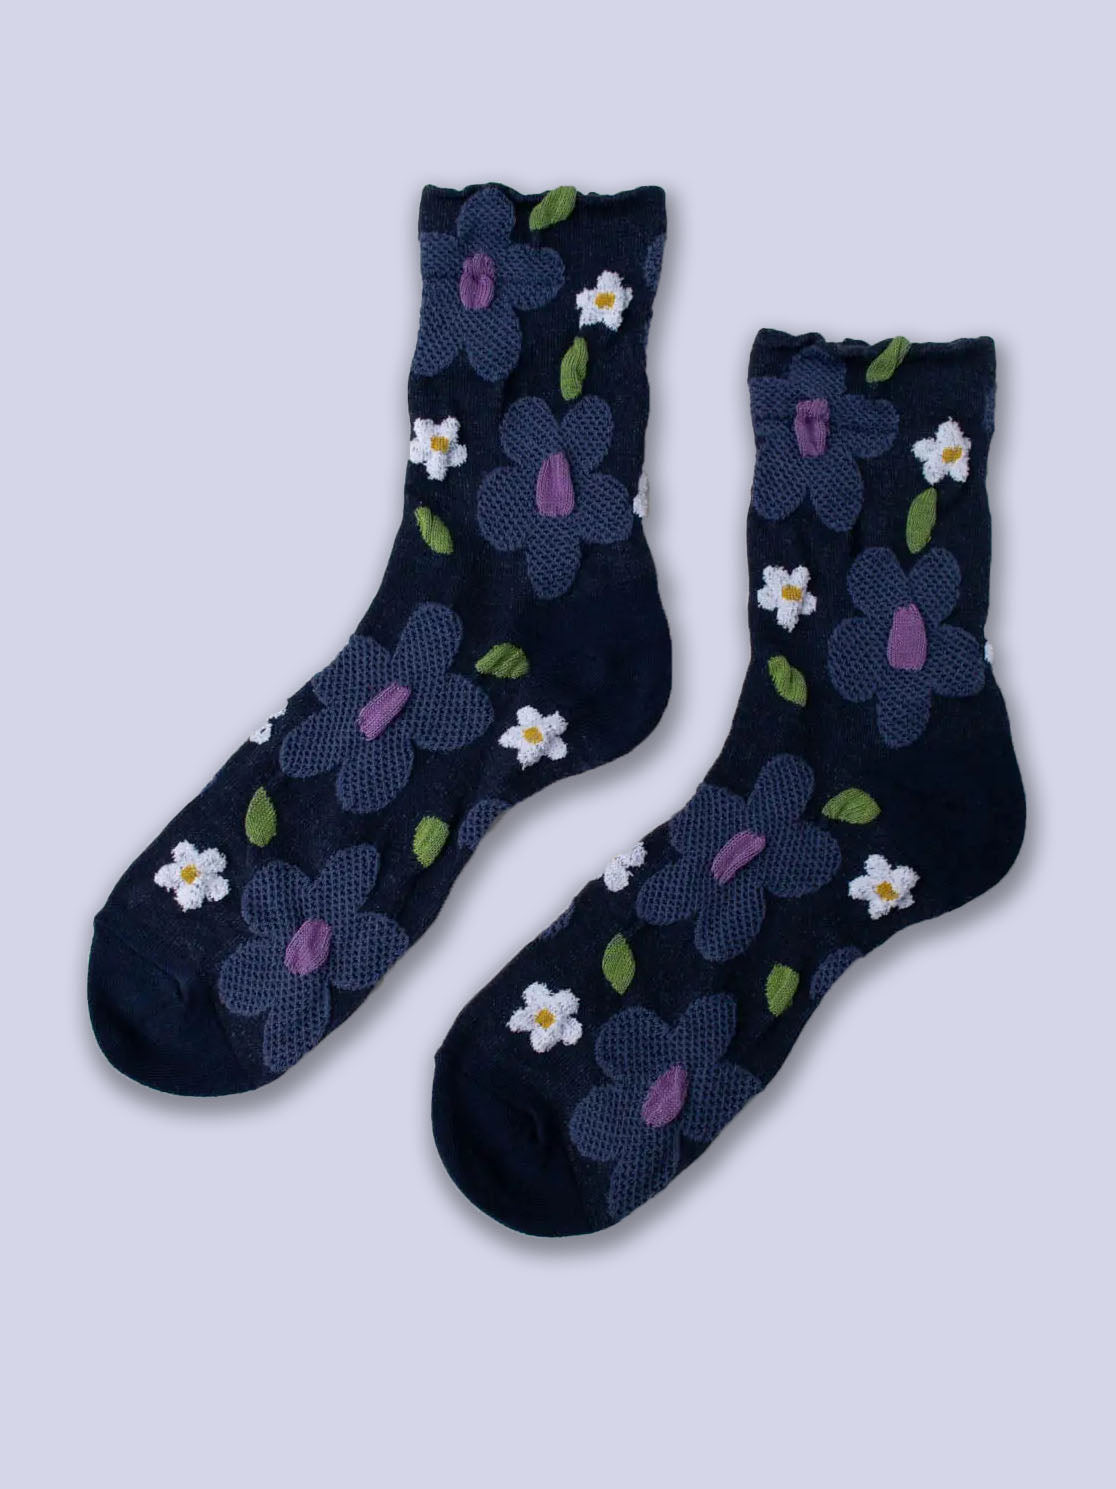 Flatlay von dunkelblauen Socken mit erhabener Struktur mit großen taubenblauen und weißen Blumen